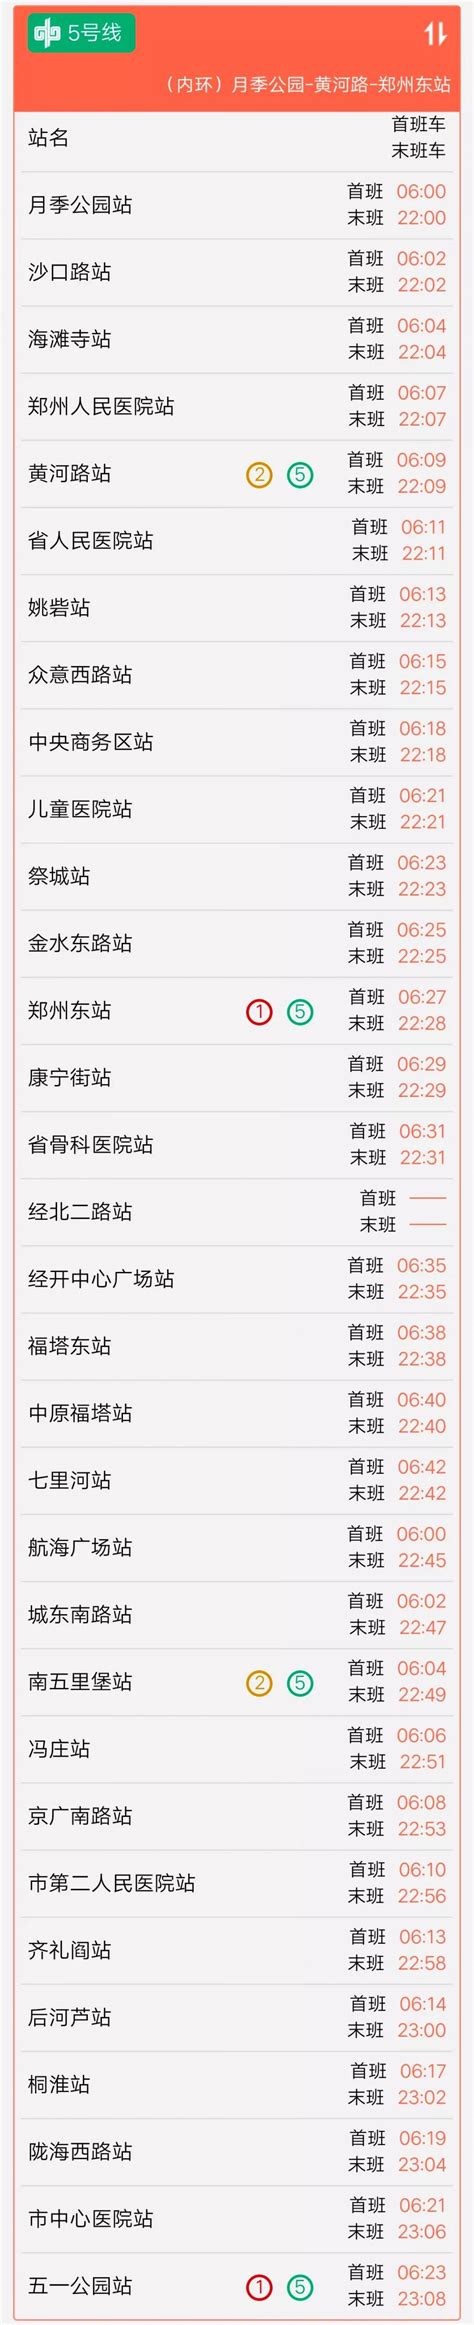 2020年8月郑州地铁5号线最新时刻运营表- 郑州本地宝